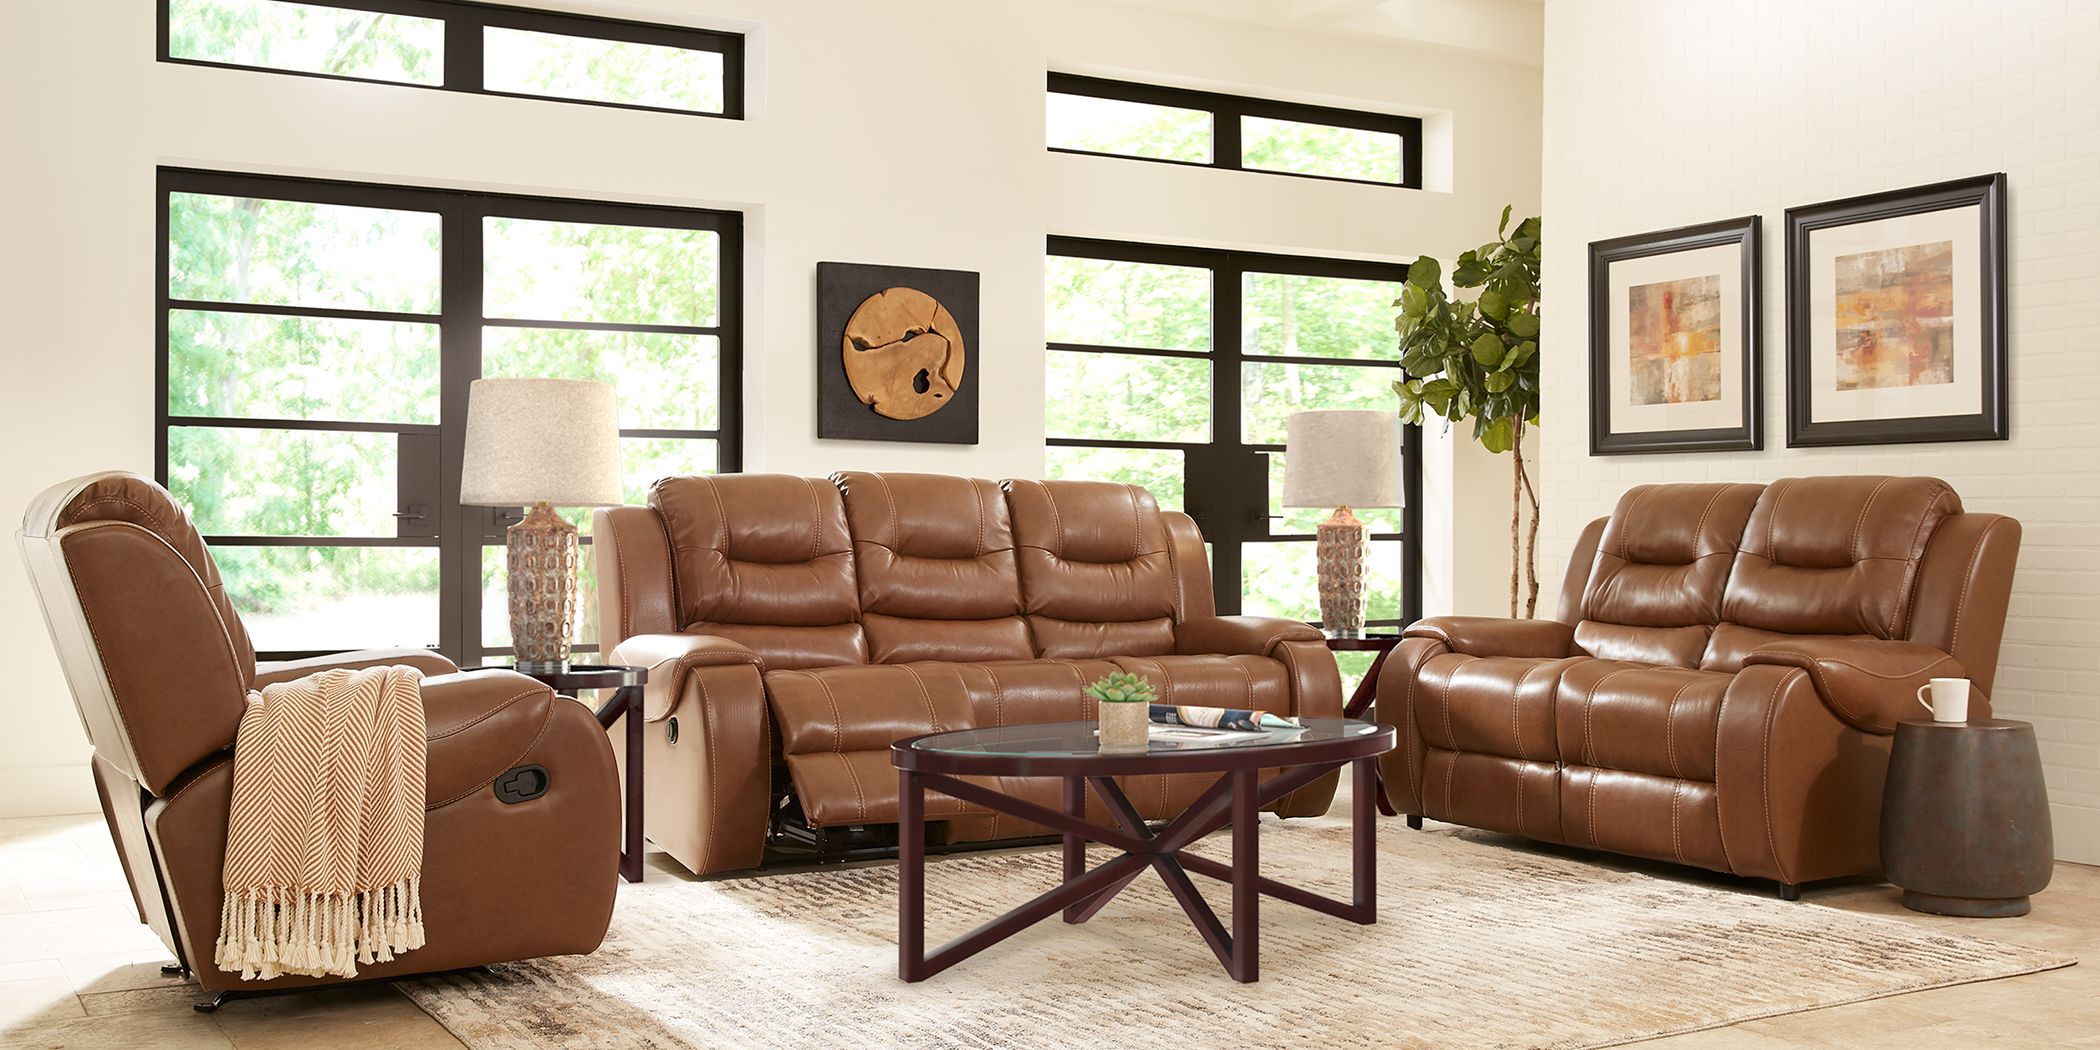 living room design saddle leather sofa